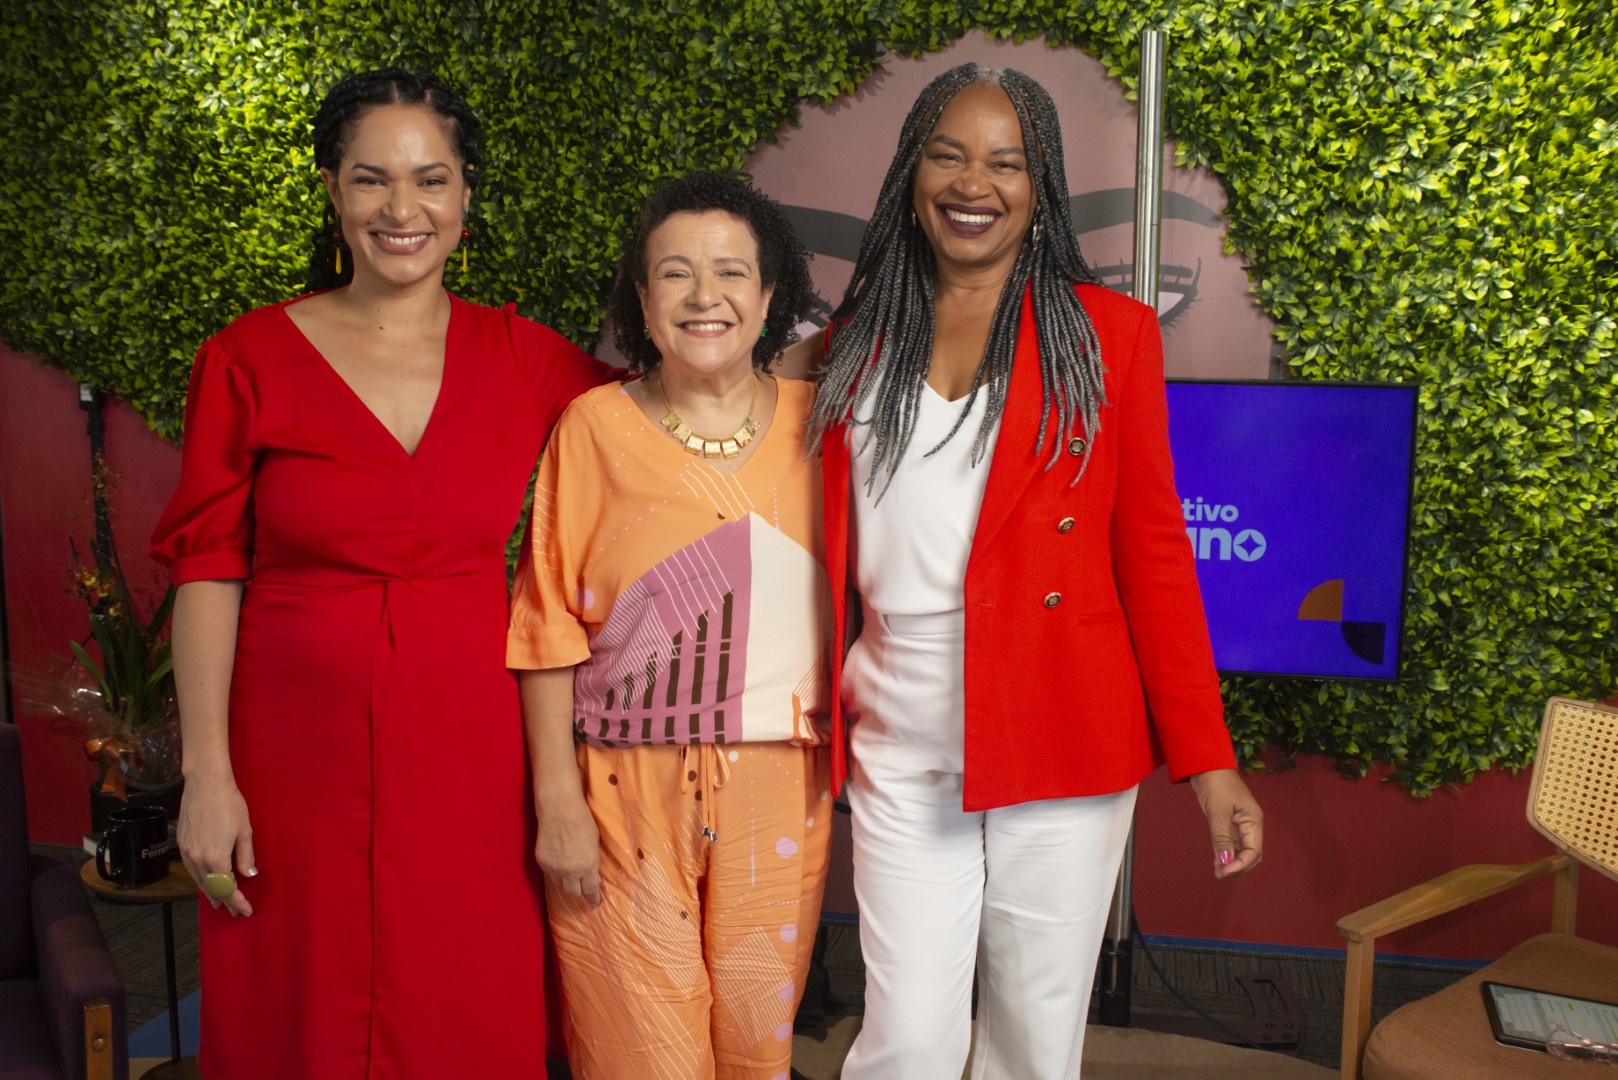 Mulheres e seu Espaço na Política, com Ana Fontes, Olívia Santana e Tauá Lourenço